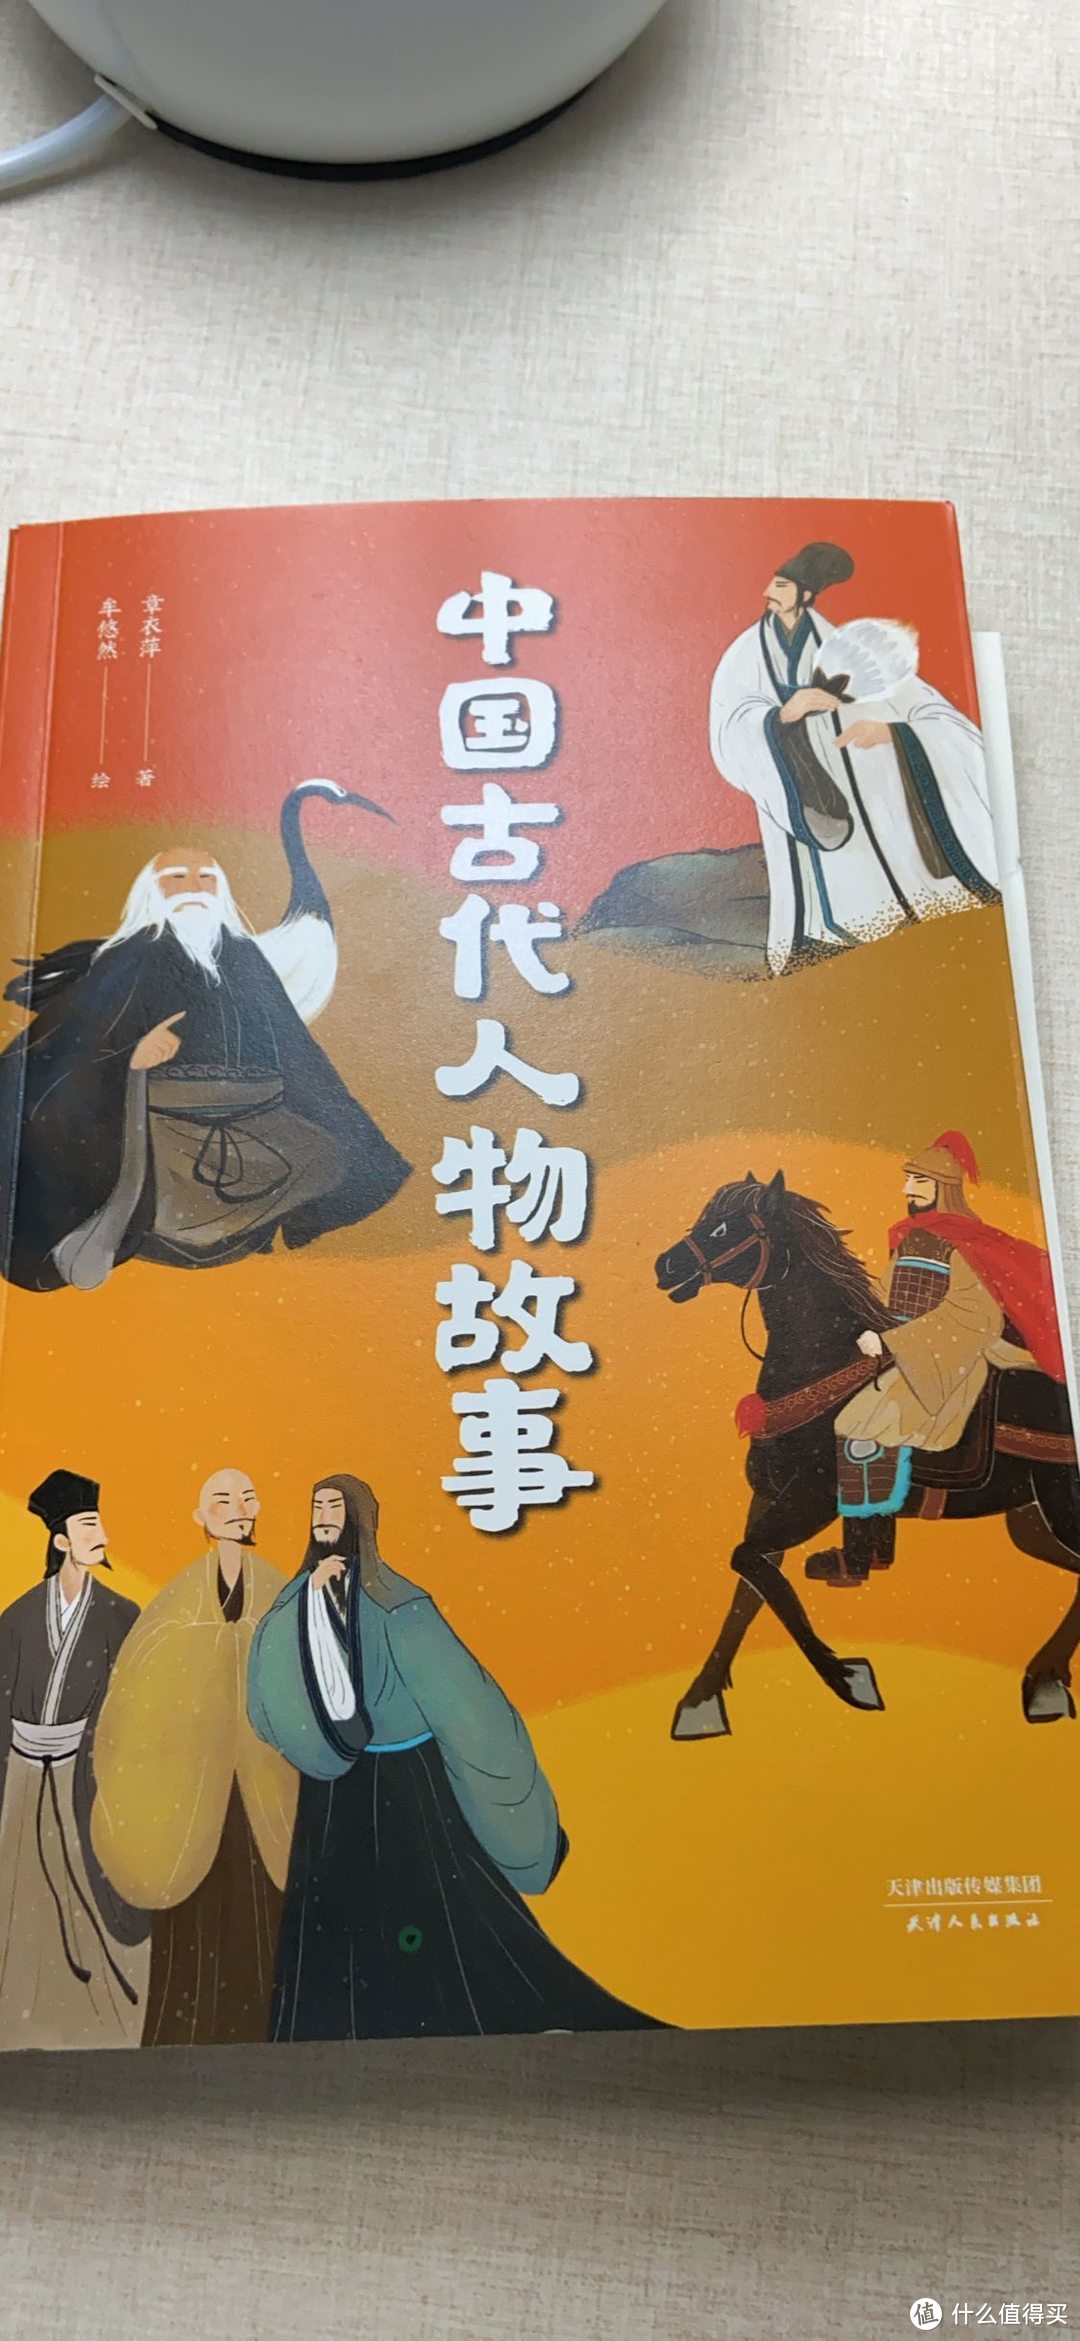 好的童书是写给所有有童心的人看的——《中文分级阅读文库K4》分享